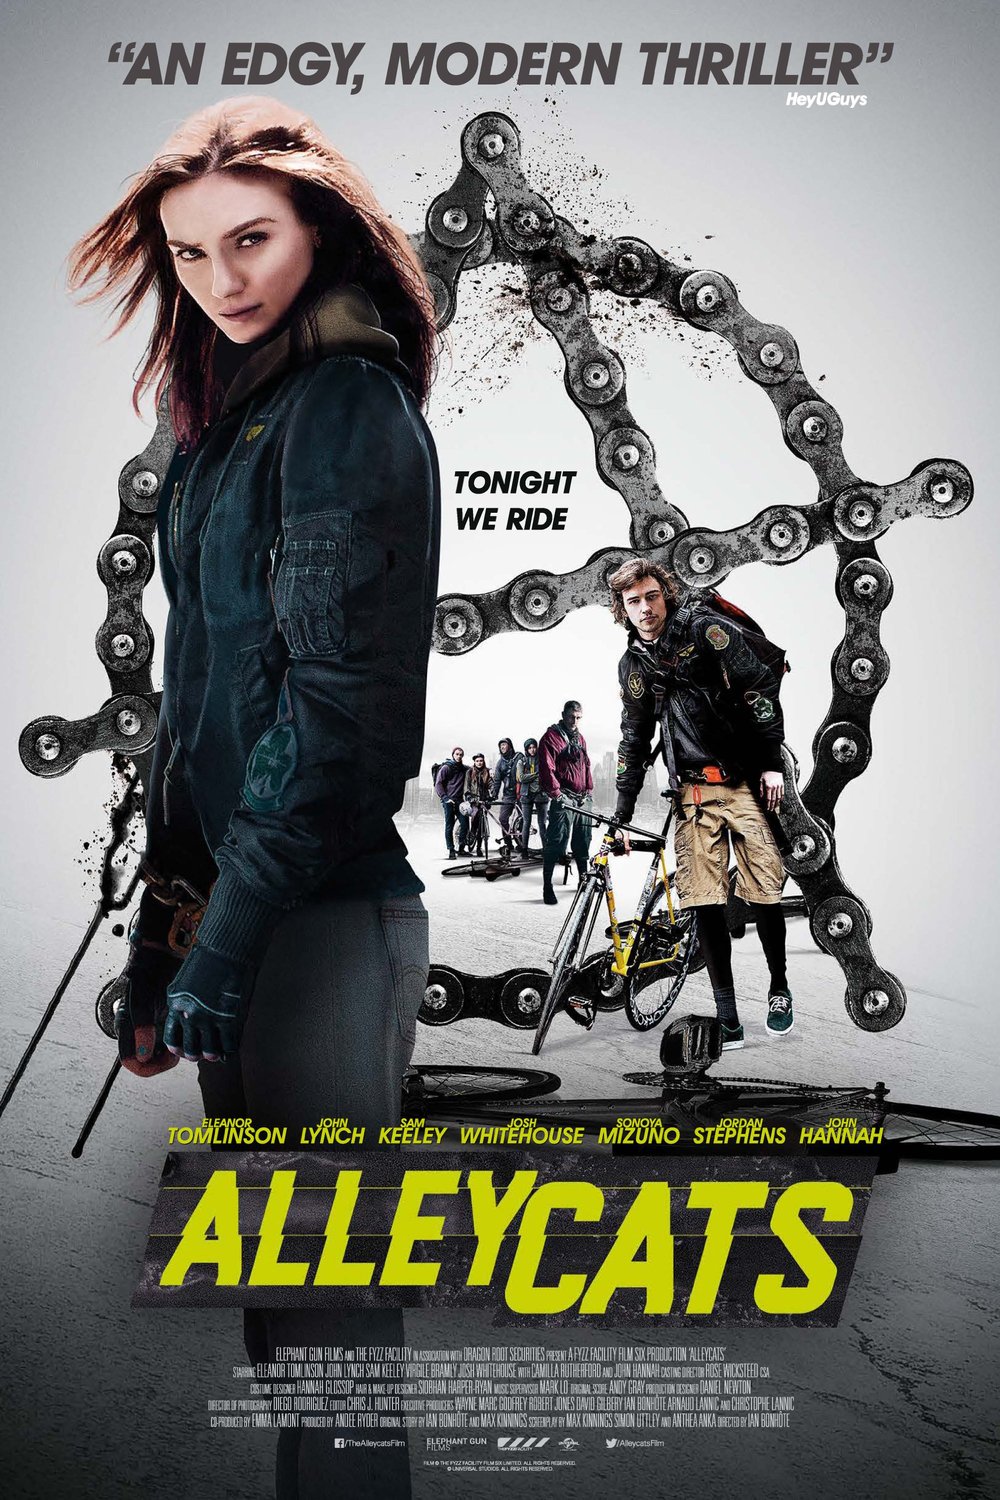 L'affiche du film Alleycats